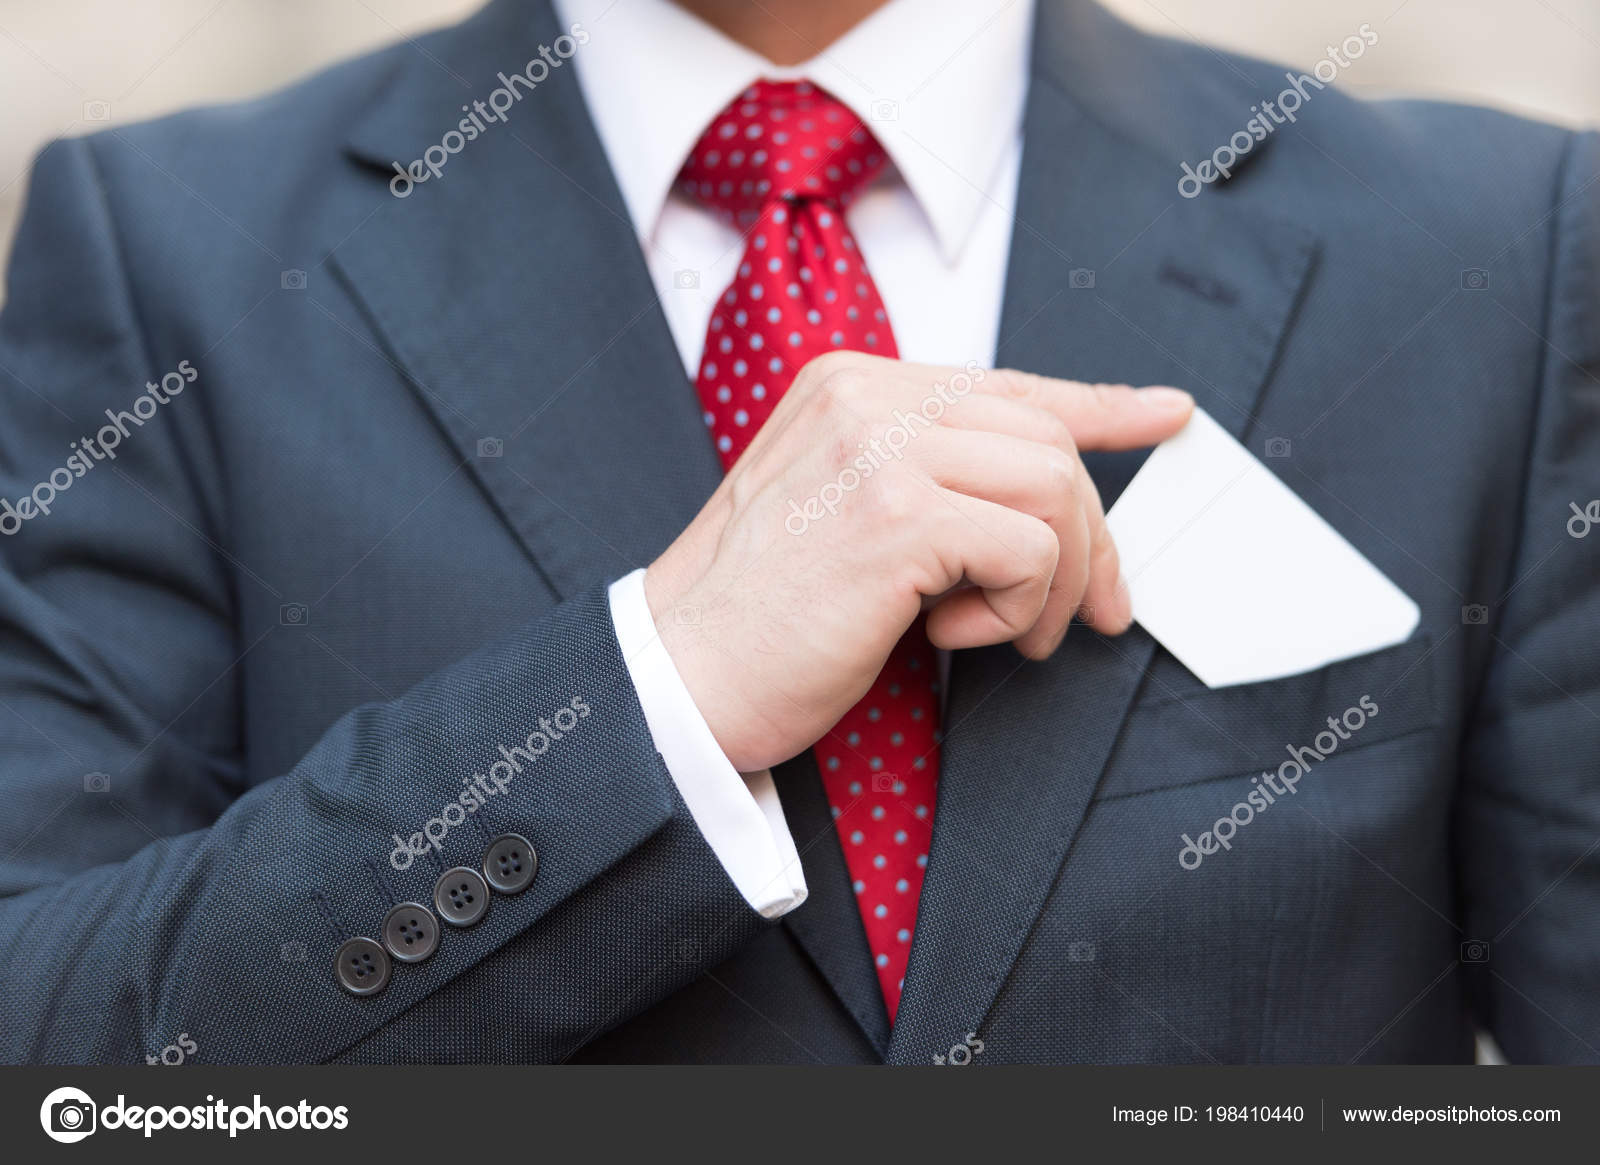 Moderno homem elegante terno com gravata vermelha e branco em